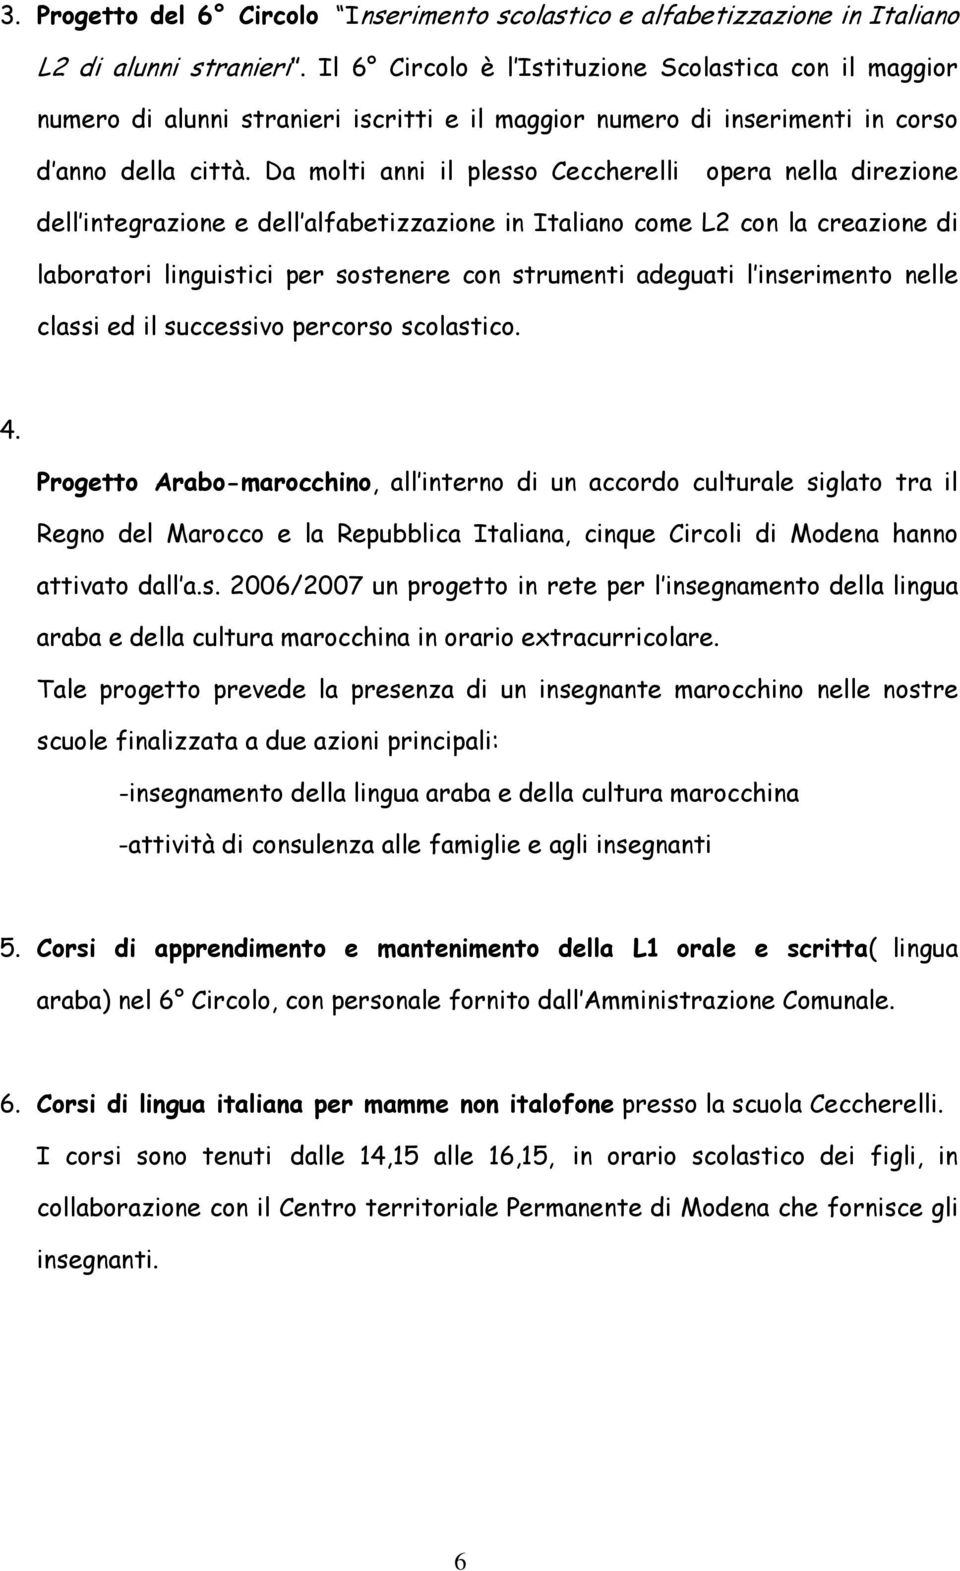 Da molti anni il plesso Ceccherelli opera nella direzione dell integrazione e dell alfabetizzazione in Italiano come L2 con la creazione di laboratori linguistici per sostenere con strumenti adeguati